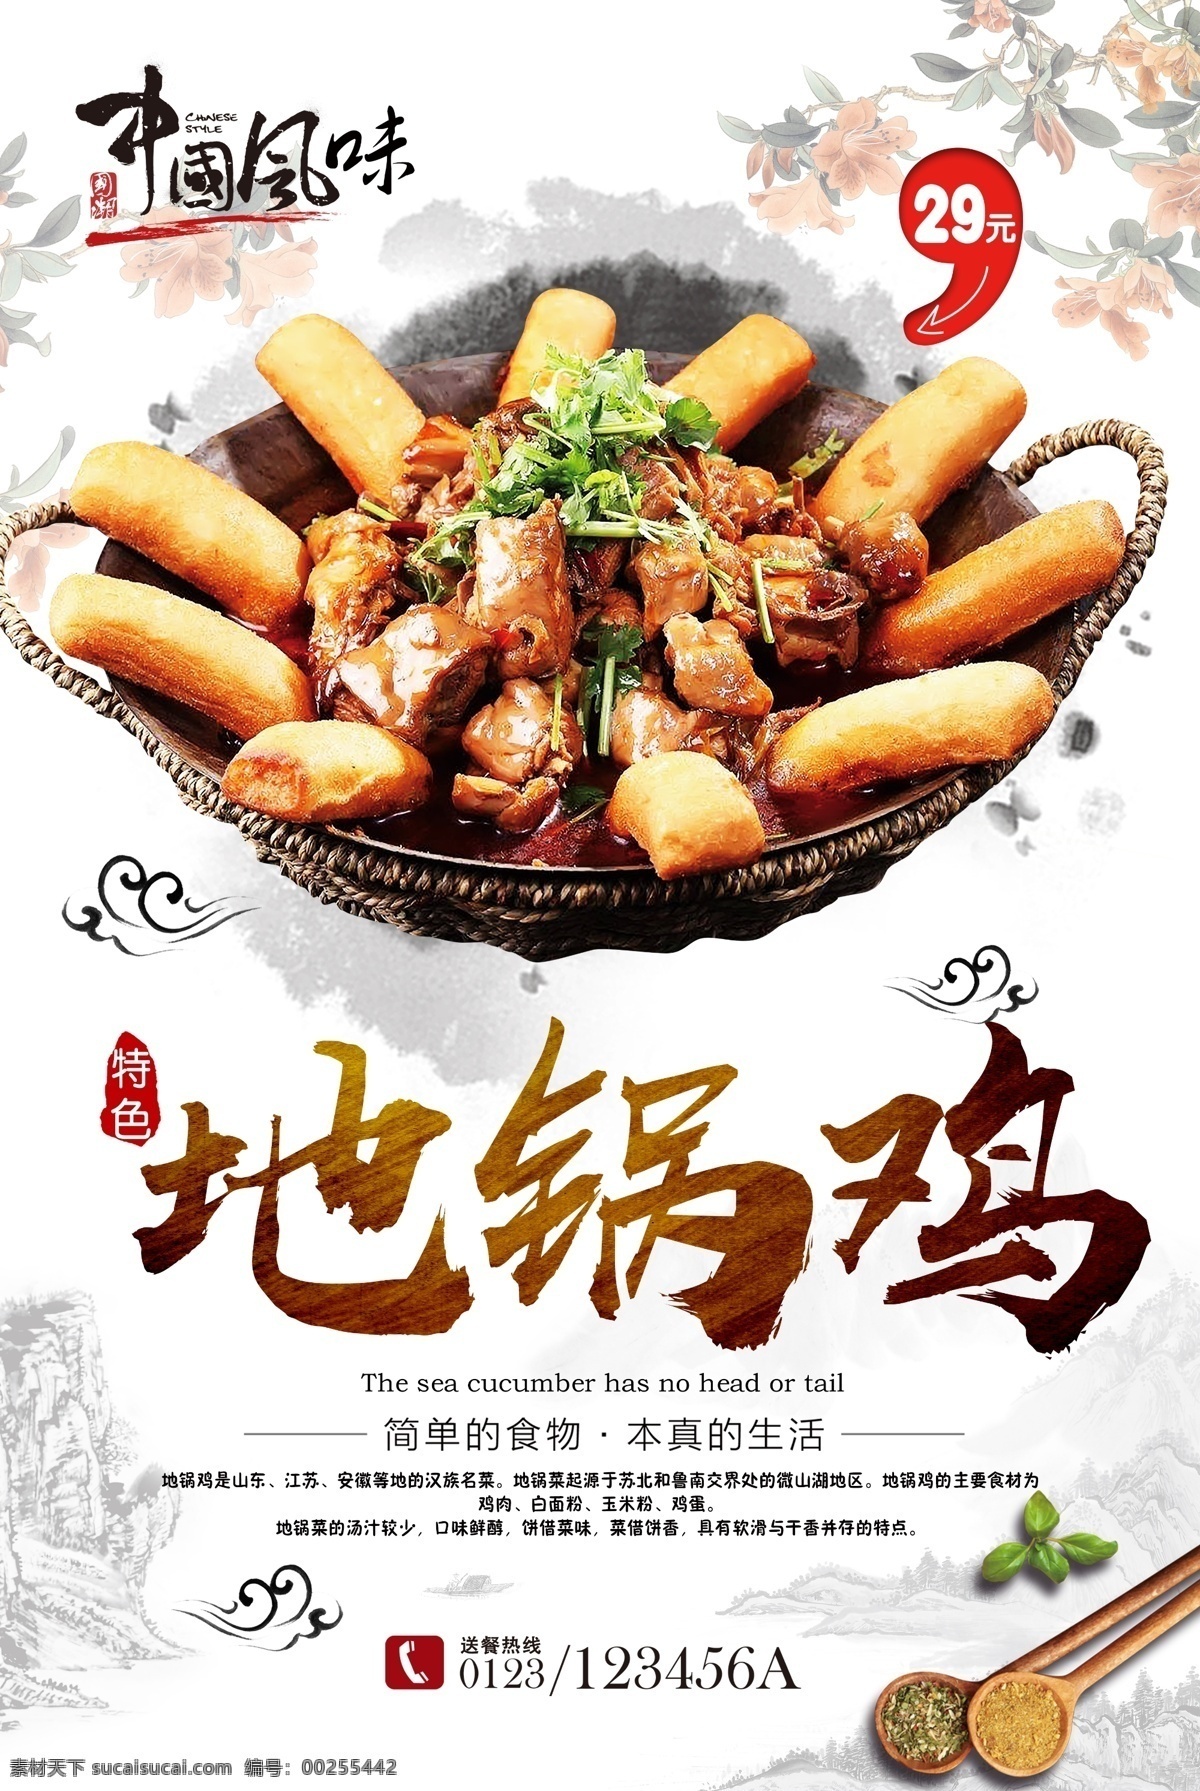 锅 鸡 地锅鸡 美食海报 传统美食 中国美食 美食 农家美食 养生美食 滋补美食 分层